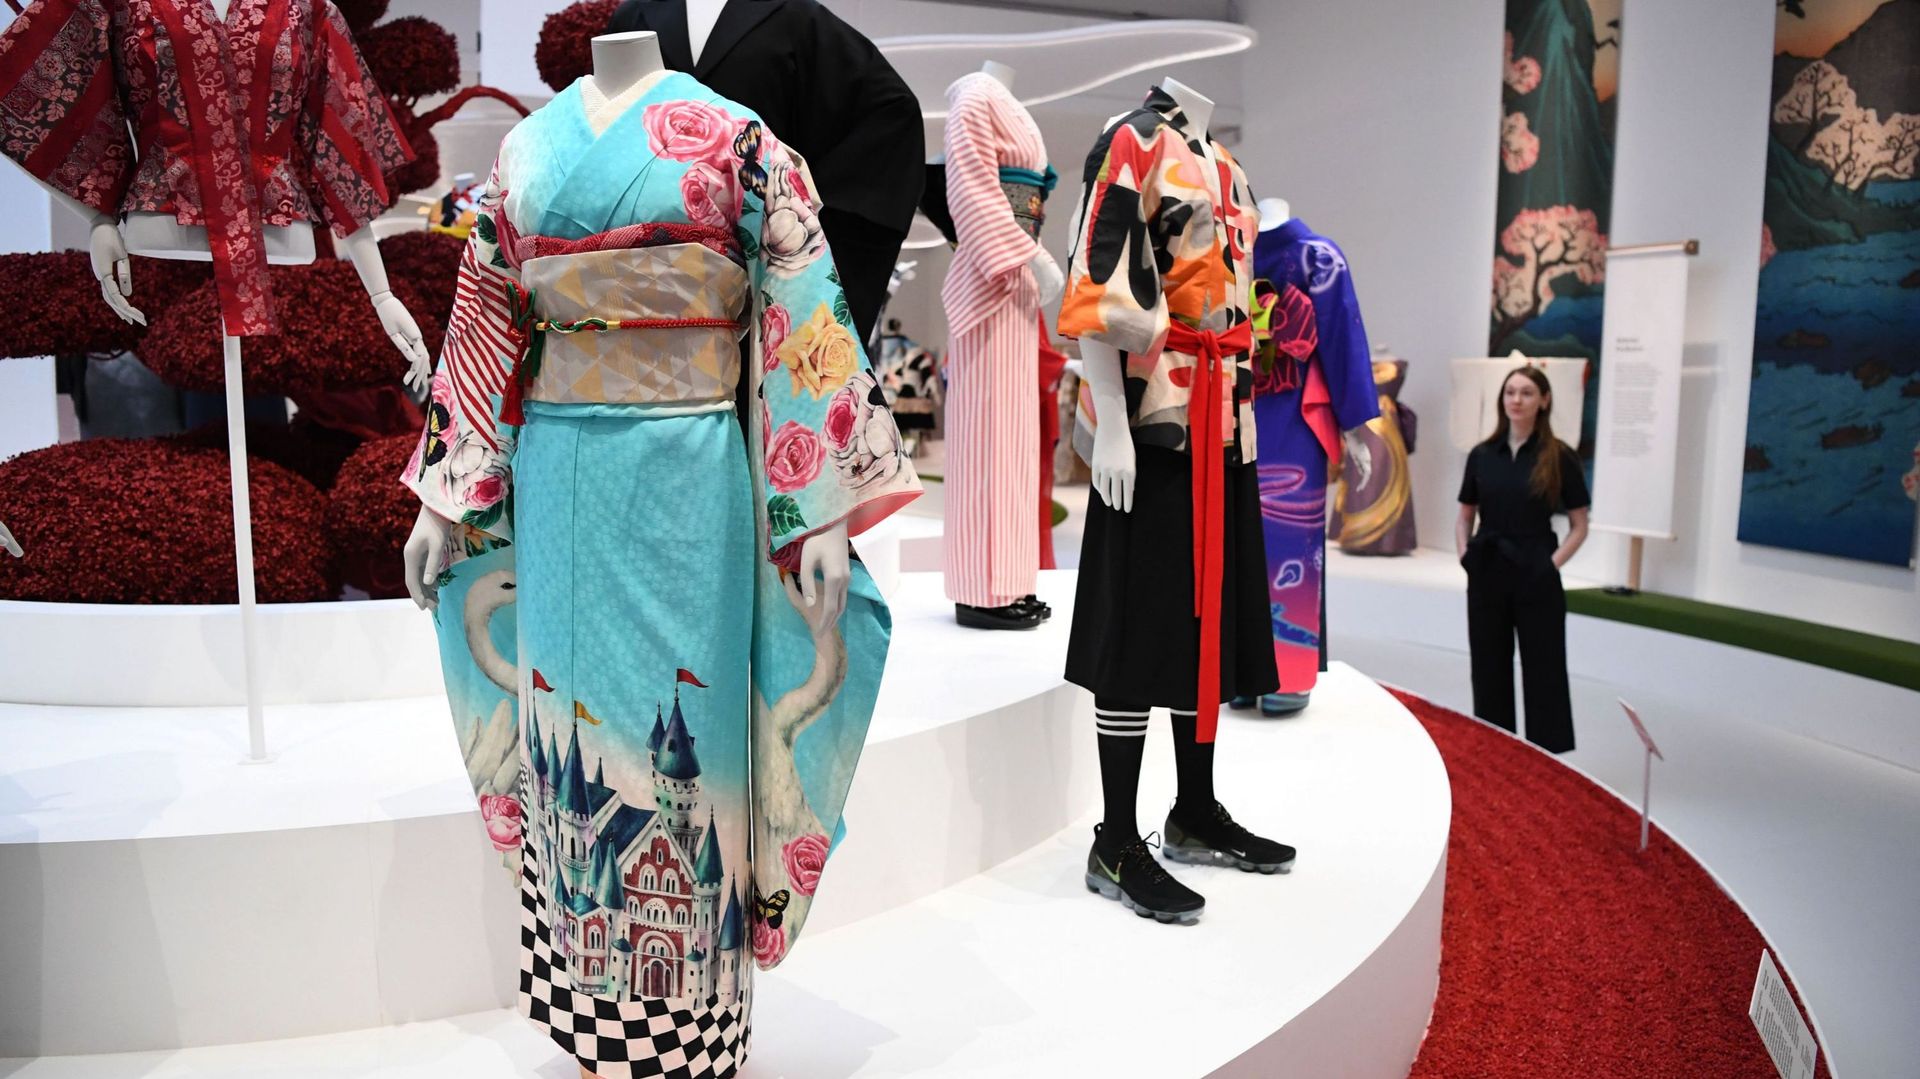 Des samouraïs aux Jedi, mille déclinaisons de kimono s'exposent à Londres